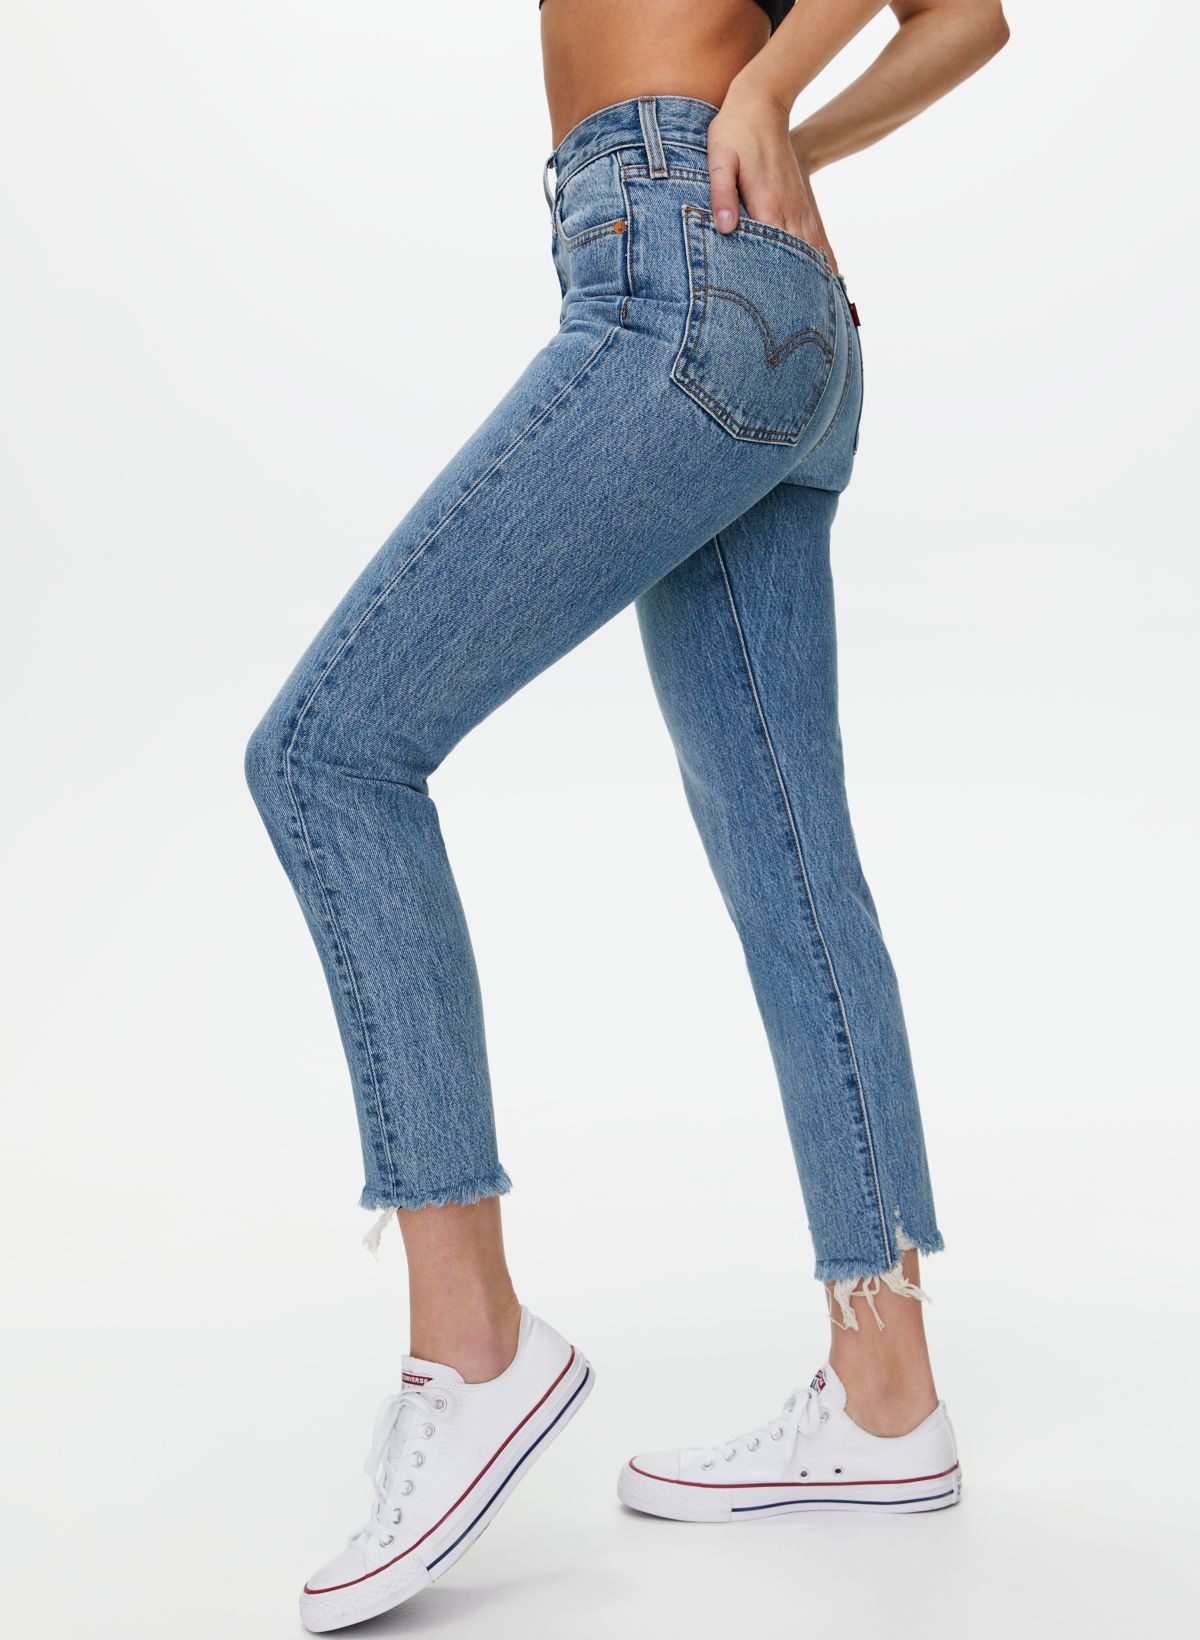 Introducir 52+ imagen levi’s wedgie jeans canada